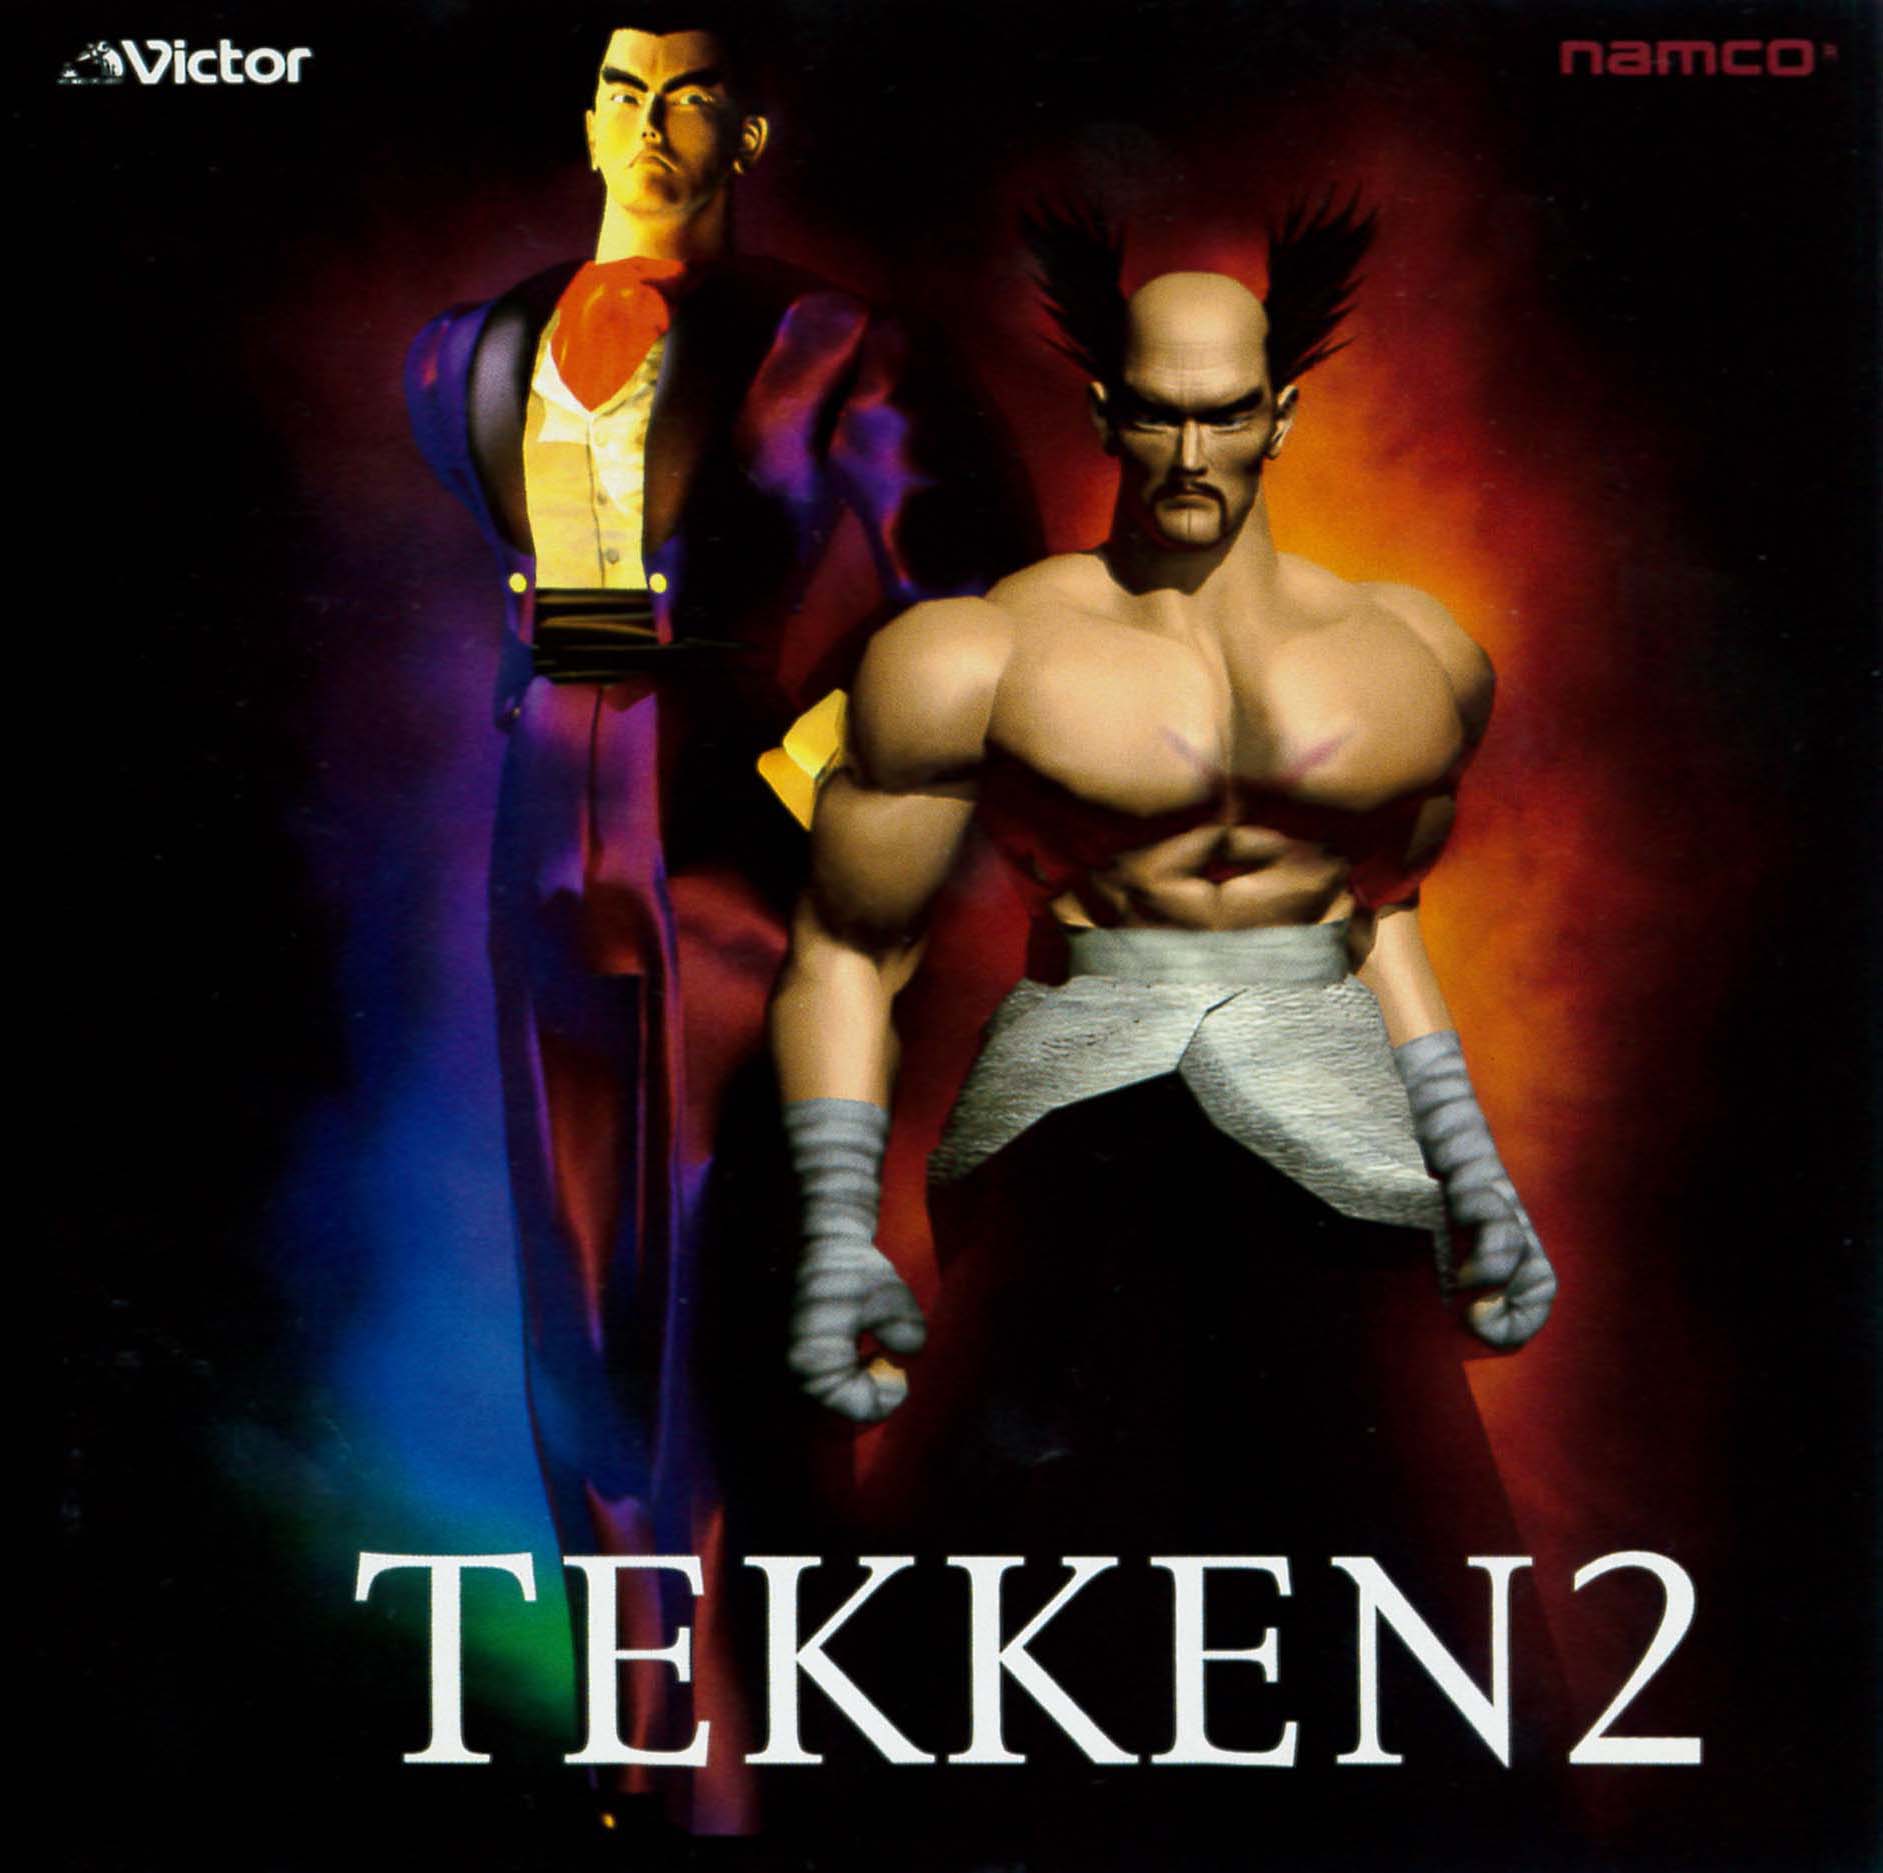 Namco Game Sound Express  Tekken 2 (1995) MP3 - Download Namco Game  Sound Express  Tekken 2 (1995) Soundtracks for FREE!